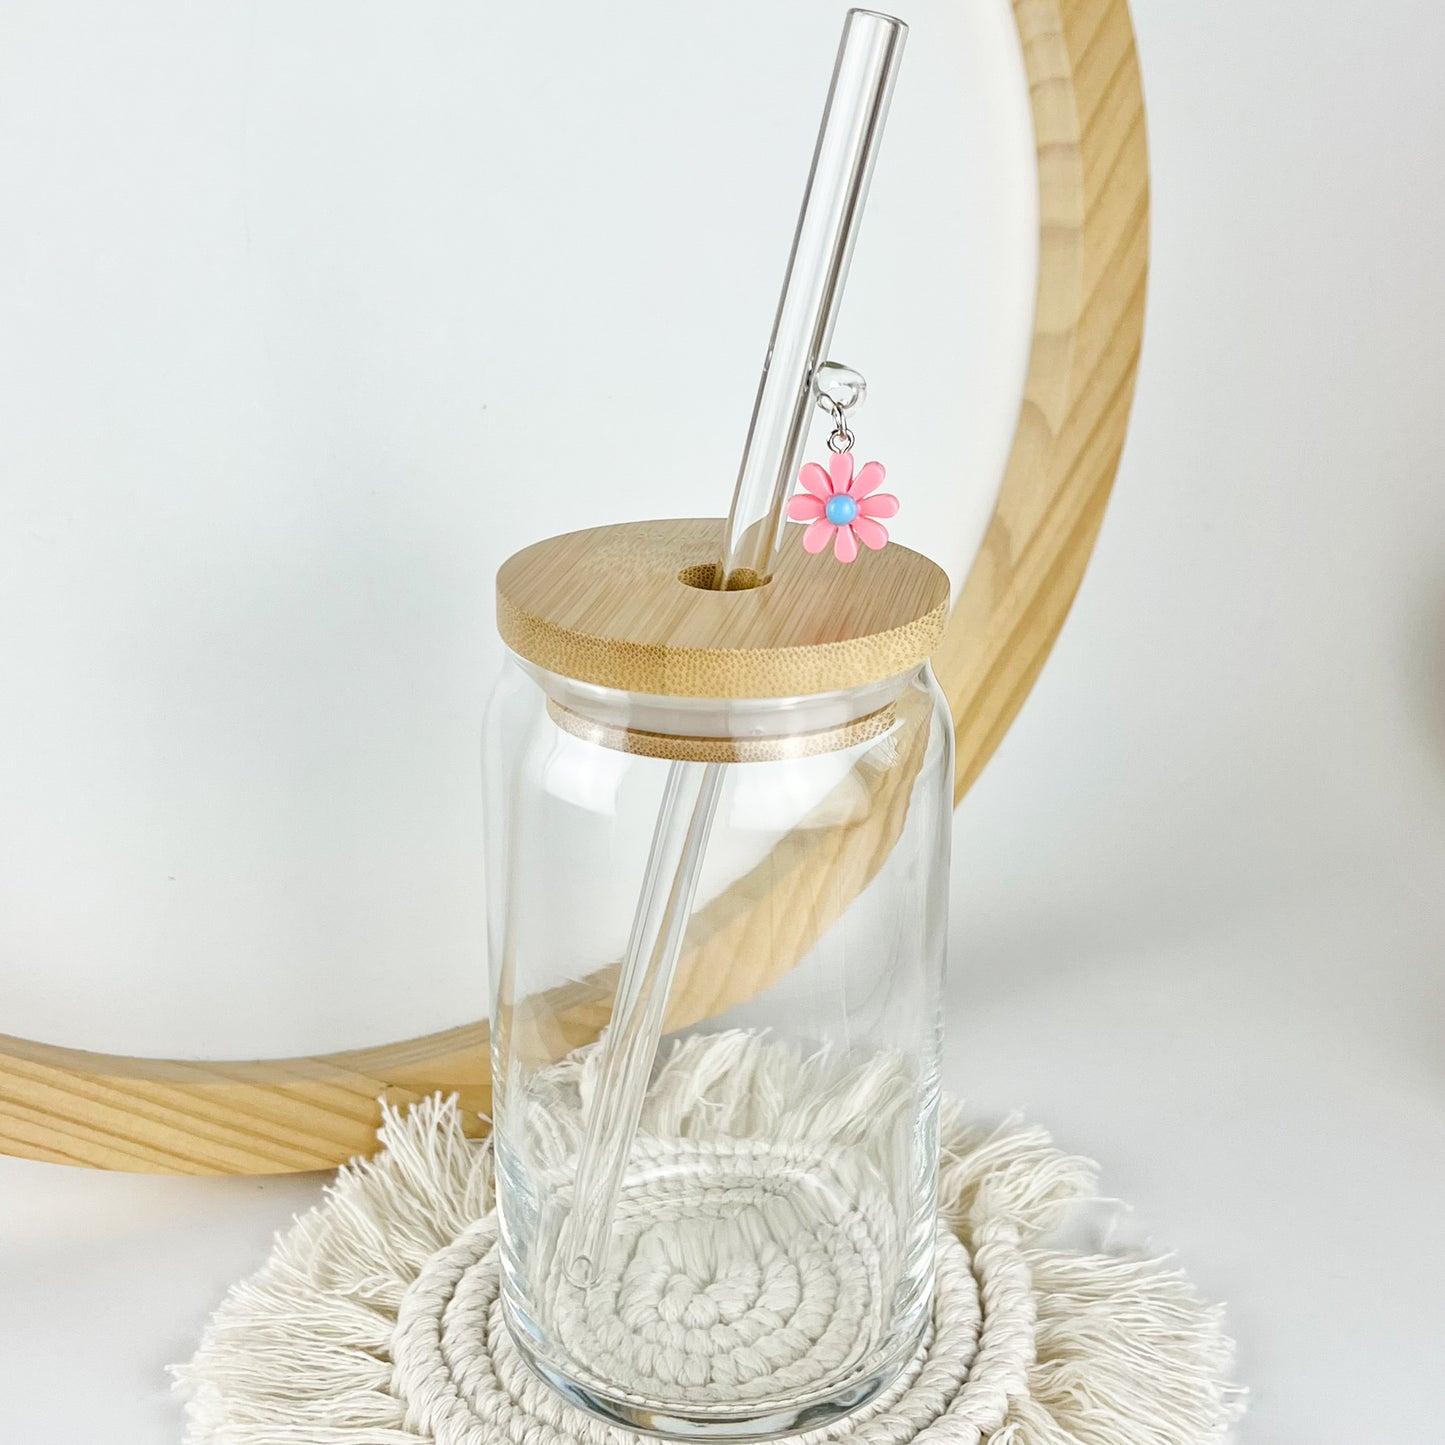 Glass Straw With Flower Charm